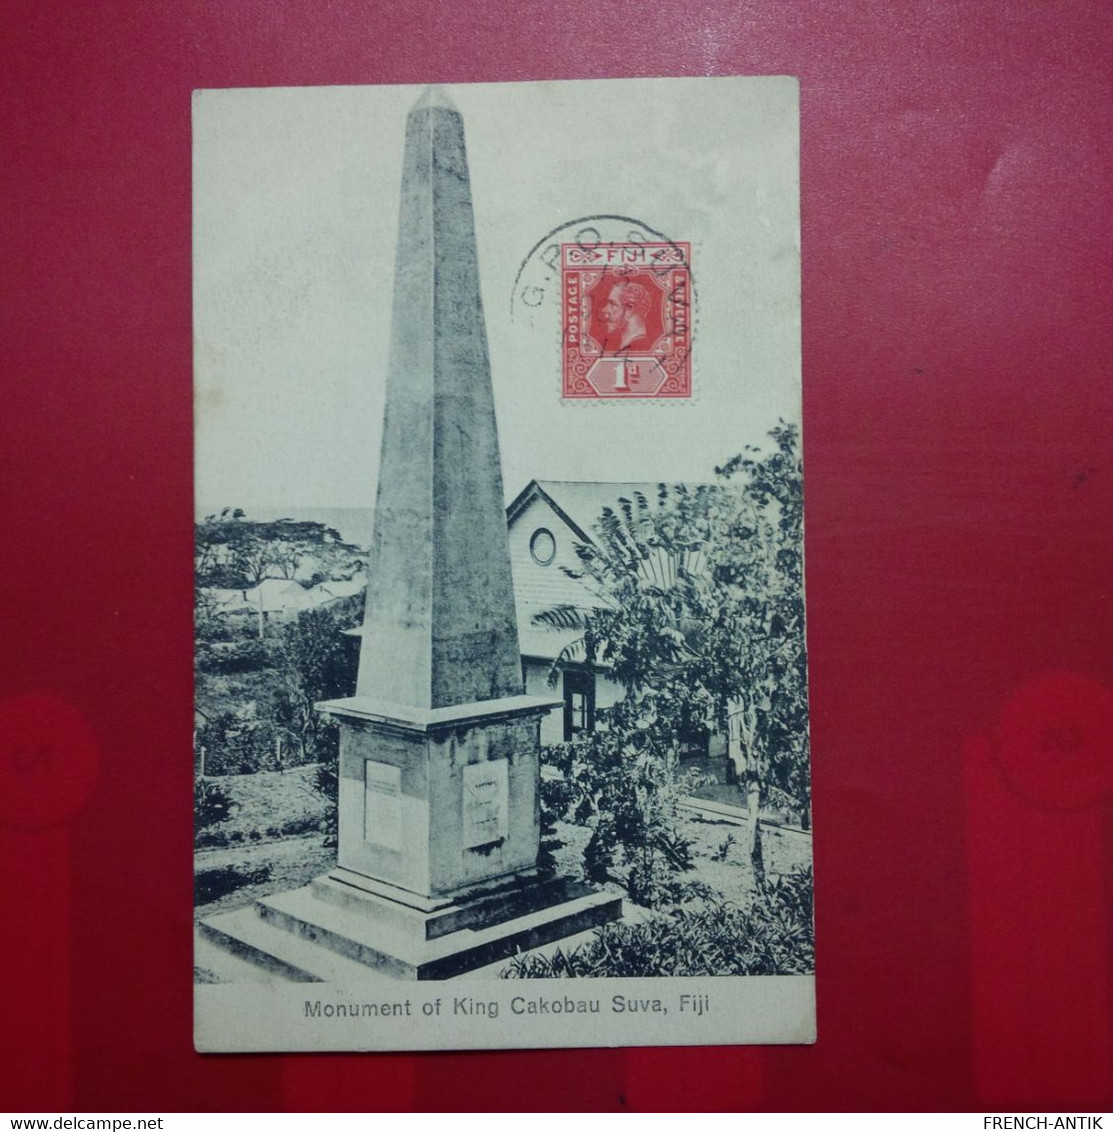 FIDJI FIJI MONUMENT OF KING CAKOBAU SUVA - Fiji